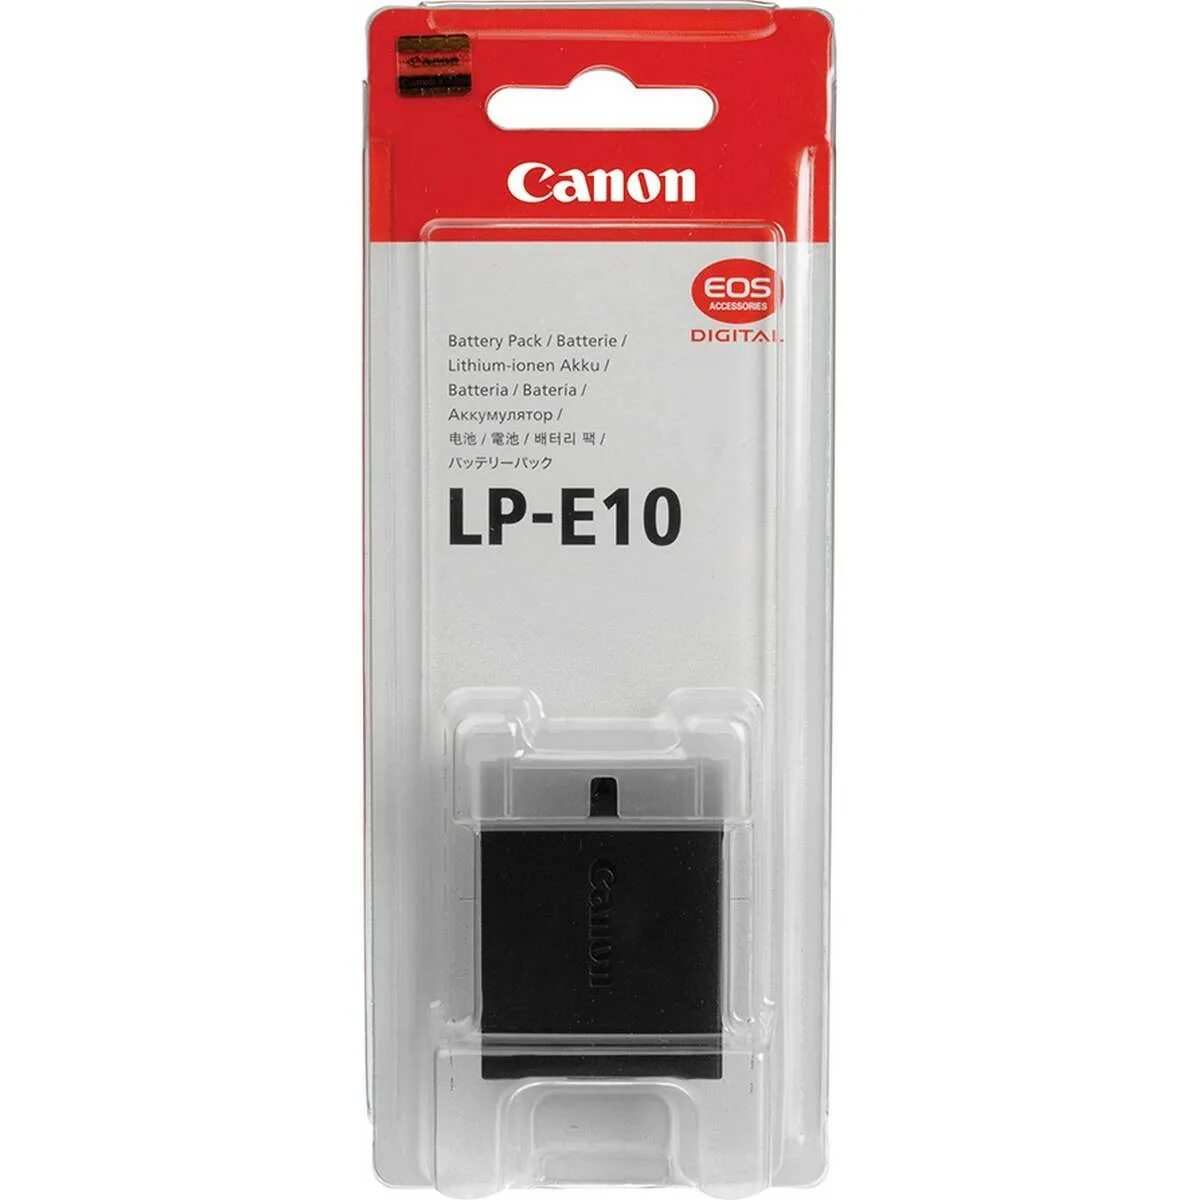 Аккумулятор Canon LP-e10. Canon 1100d аккумулятор. Canon LP-10. Батарейка LP-e10.